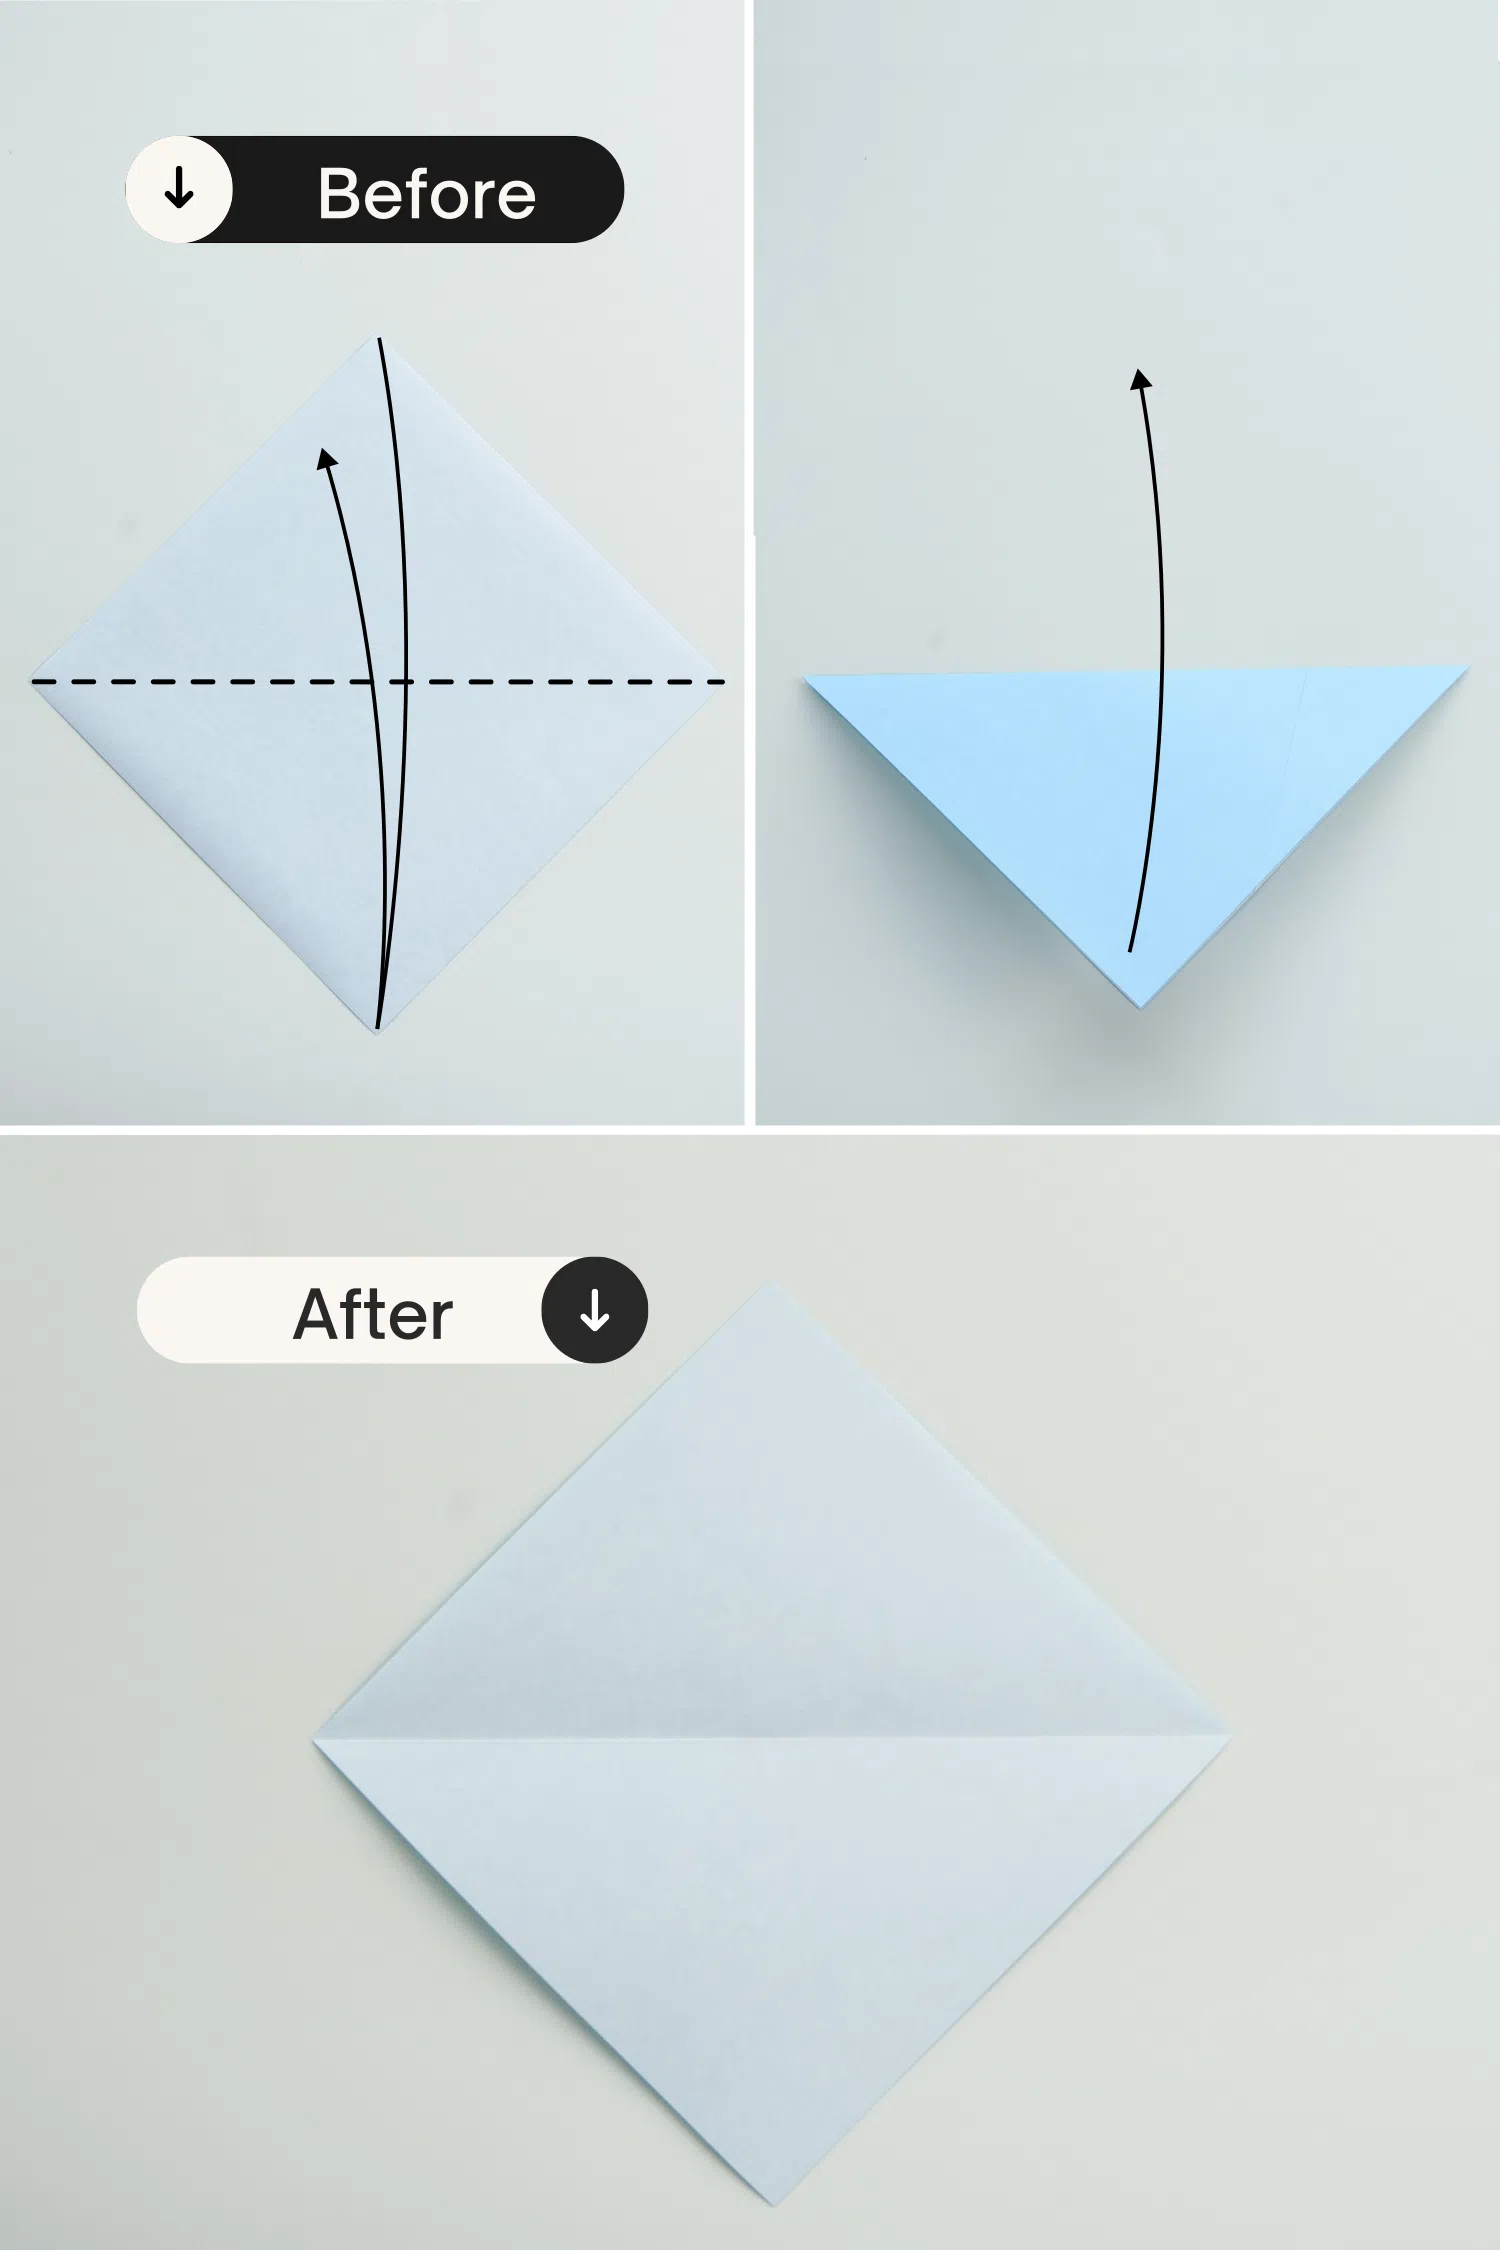 origami fish base | origami ok